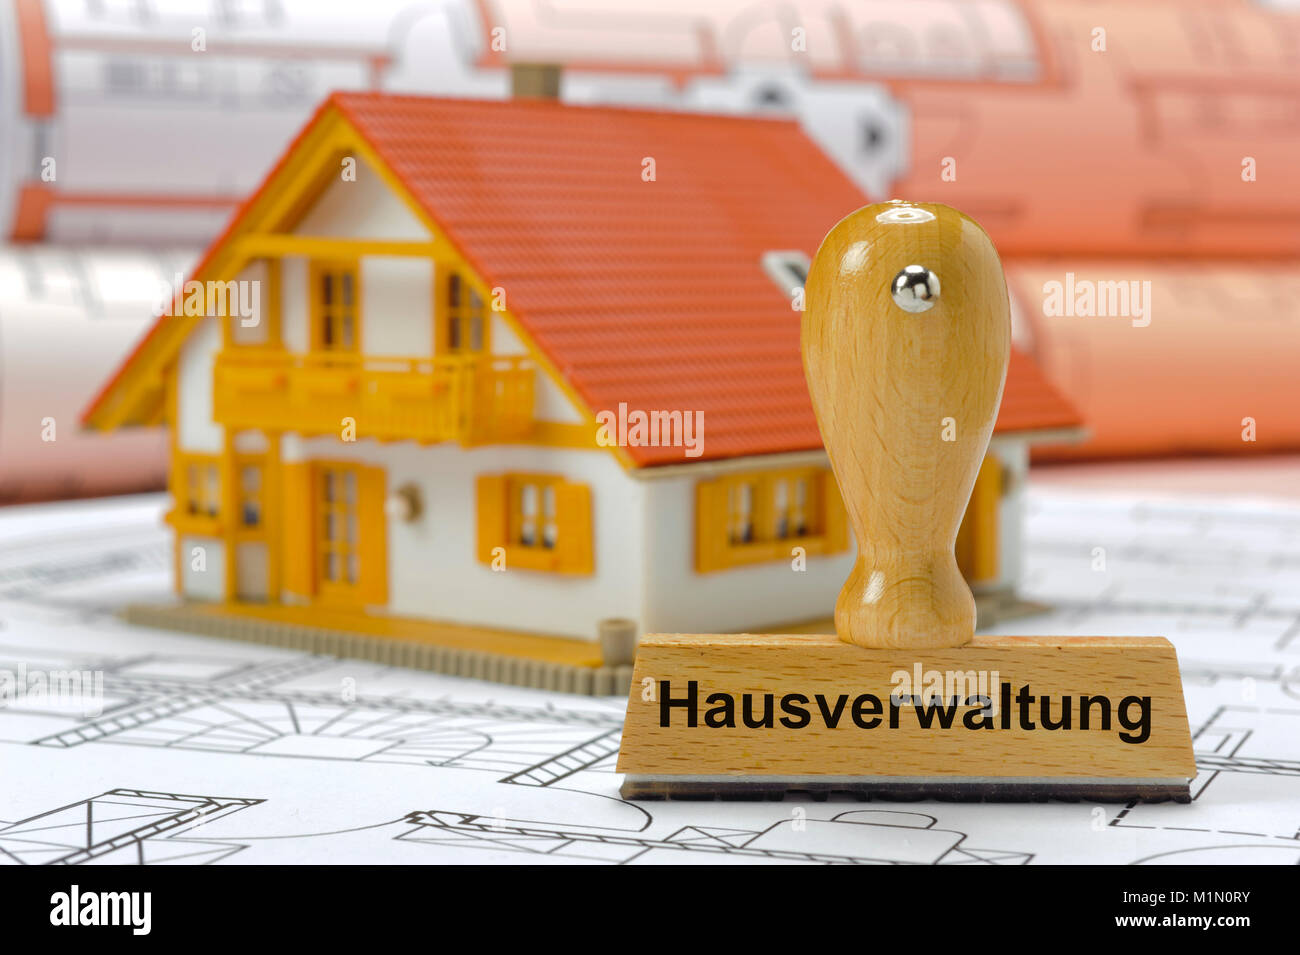 Hausverwaltung gedruckt auf Stempel mit Modellhaus Foto Stock